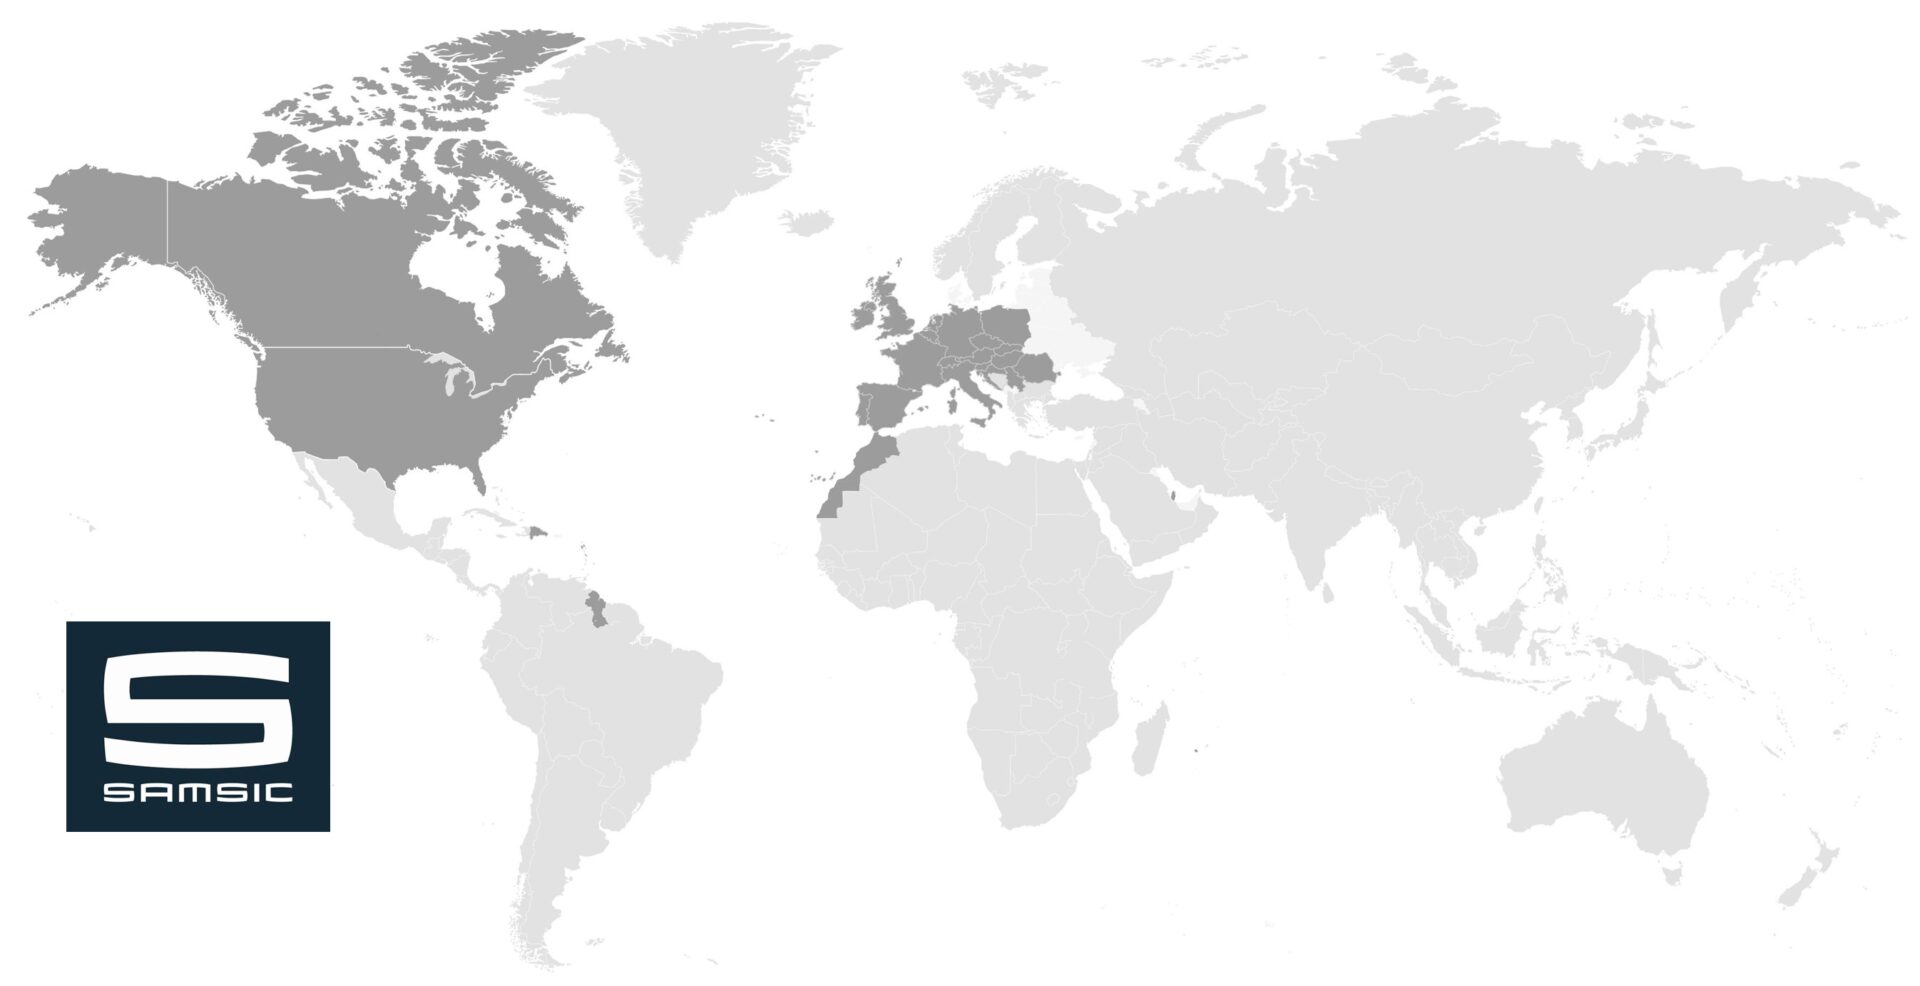 Samsic - kaart met landen waar het bedrijf actief is - wereldkaart